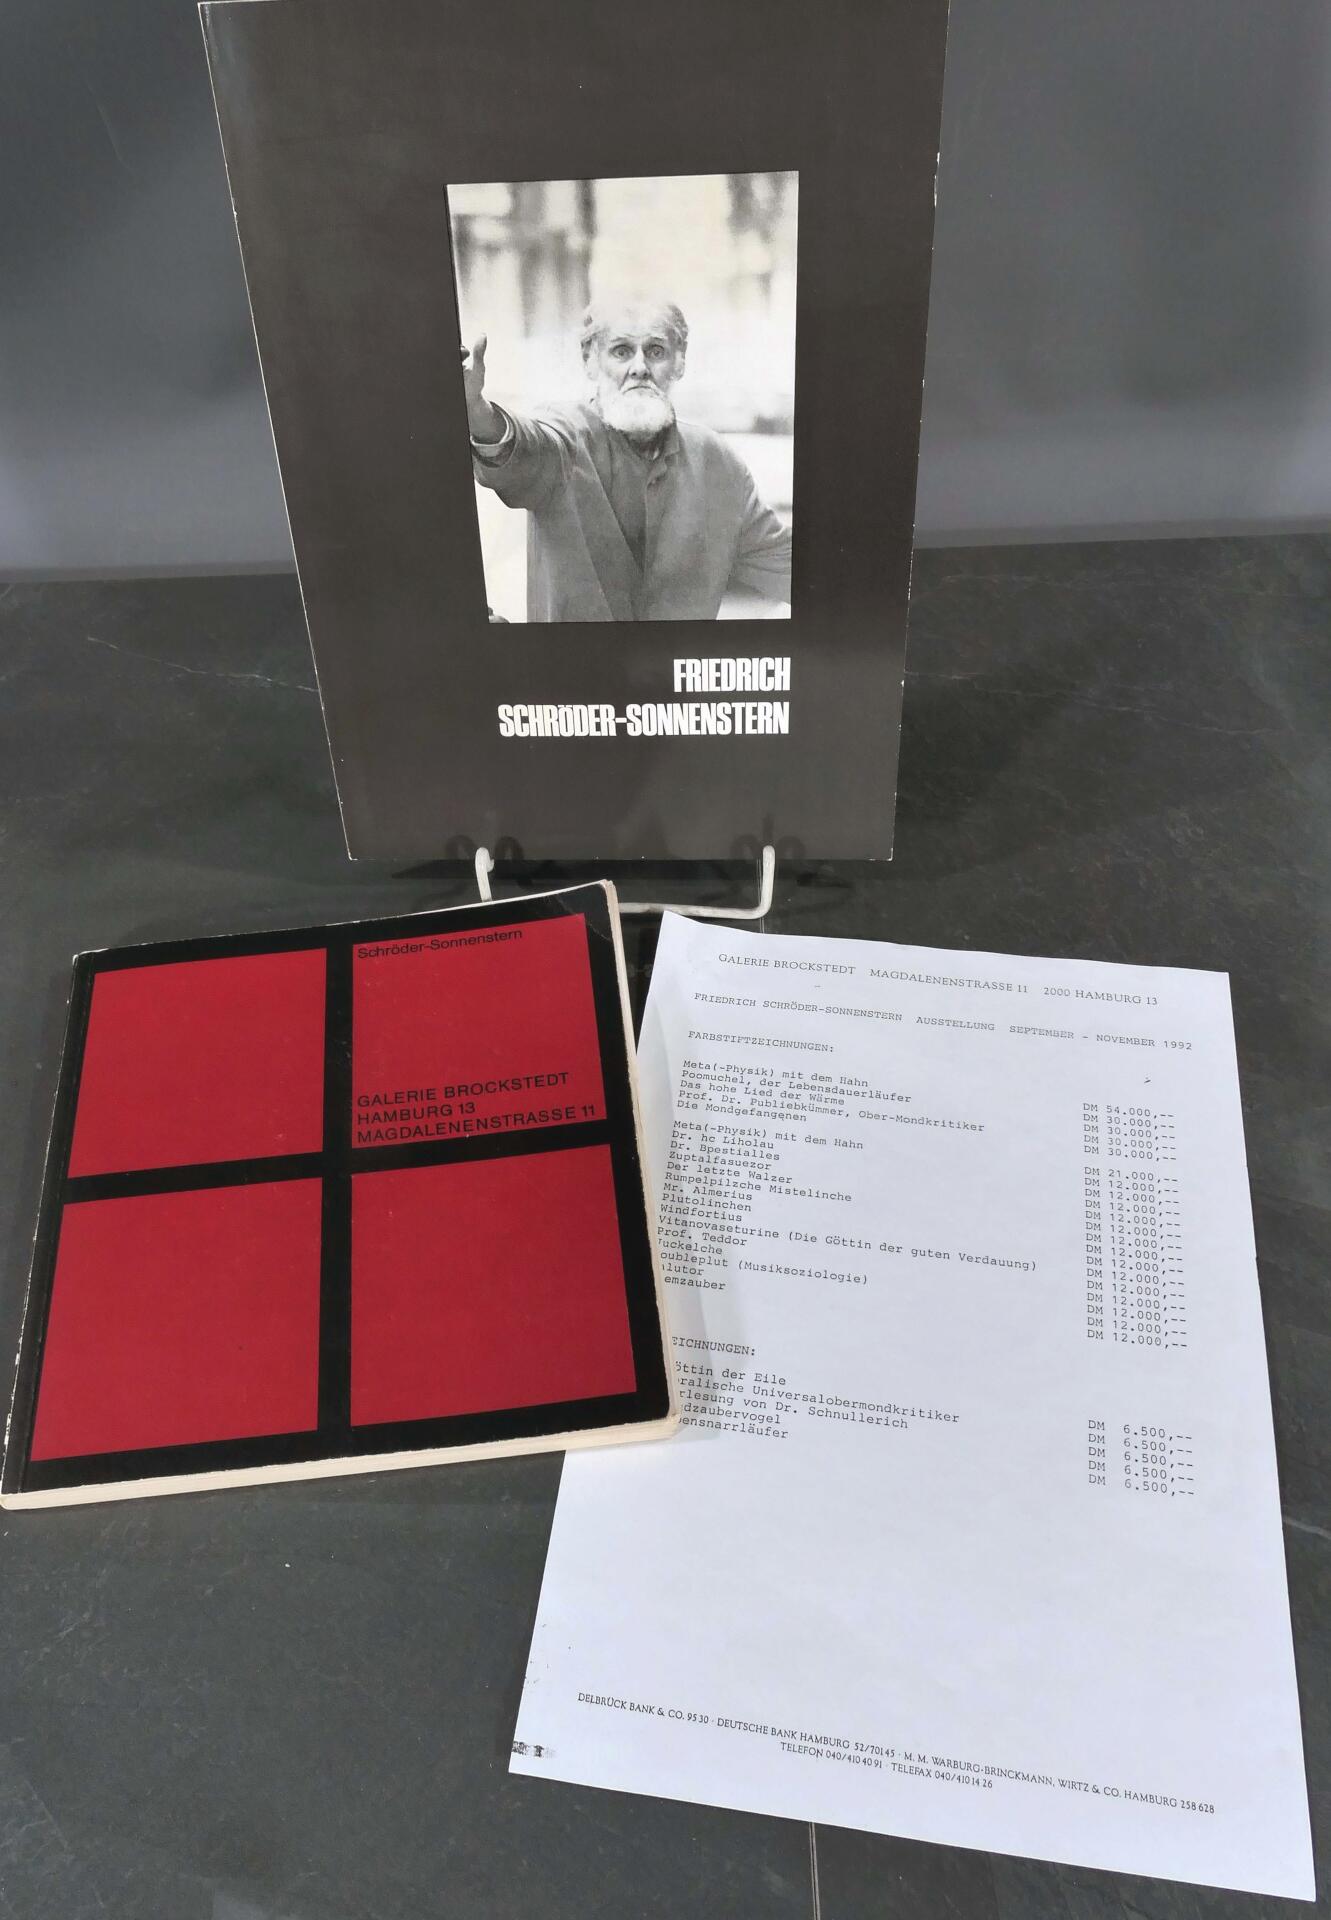 3 tlg. Konvolut "Friedrich Schröder-Sonnenstern", bestehend aus Katalog von 1973 und Preisliste 199